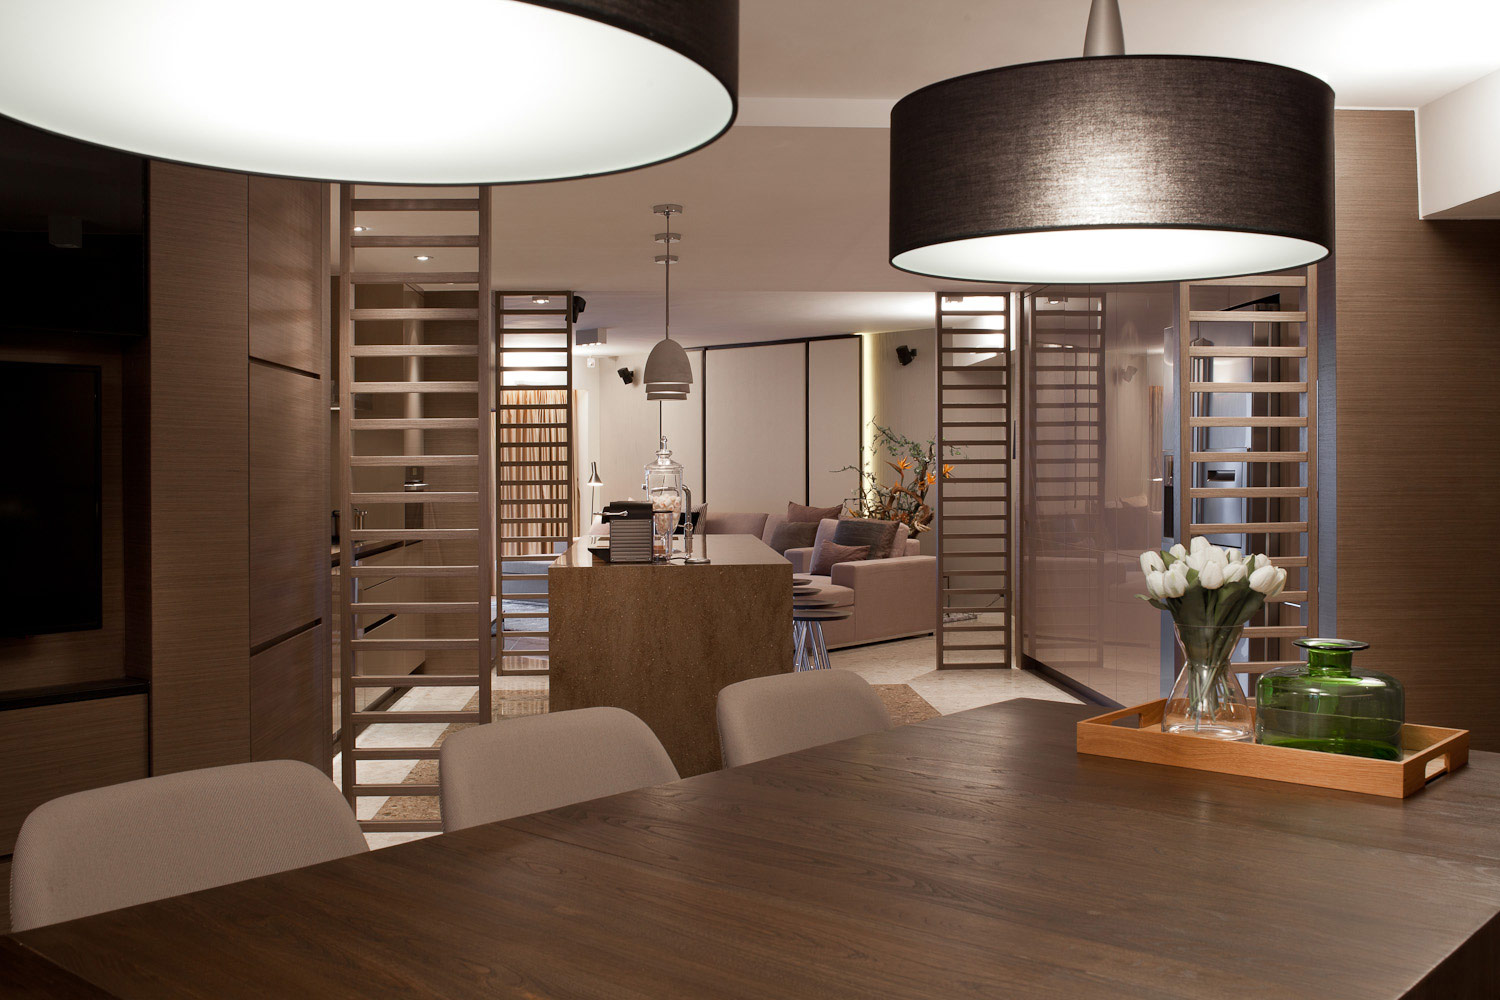 lui design and associates hong kong interior design firm residential modern